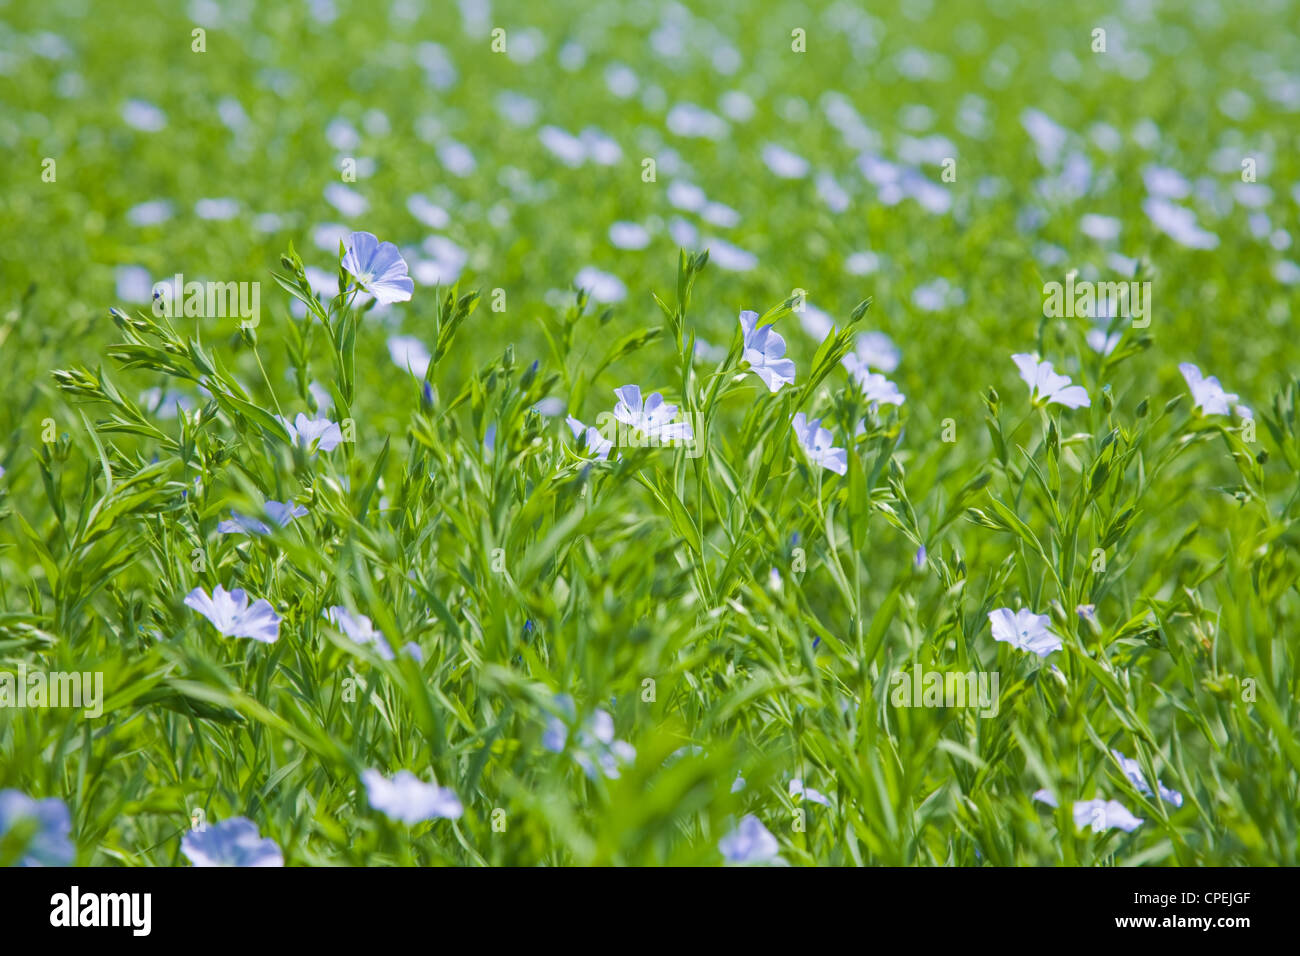 flax plants (Linum usitatissimum) Stock Photo